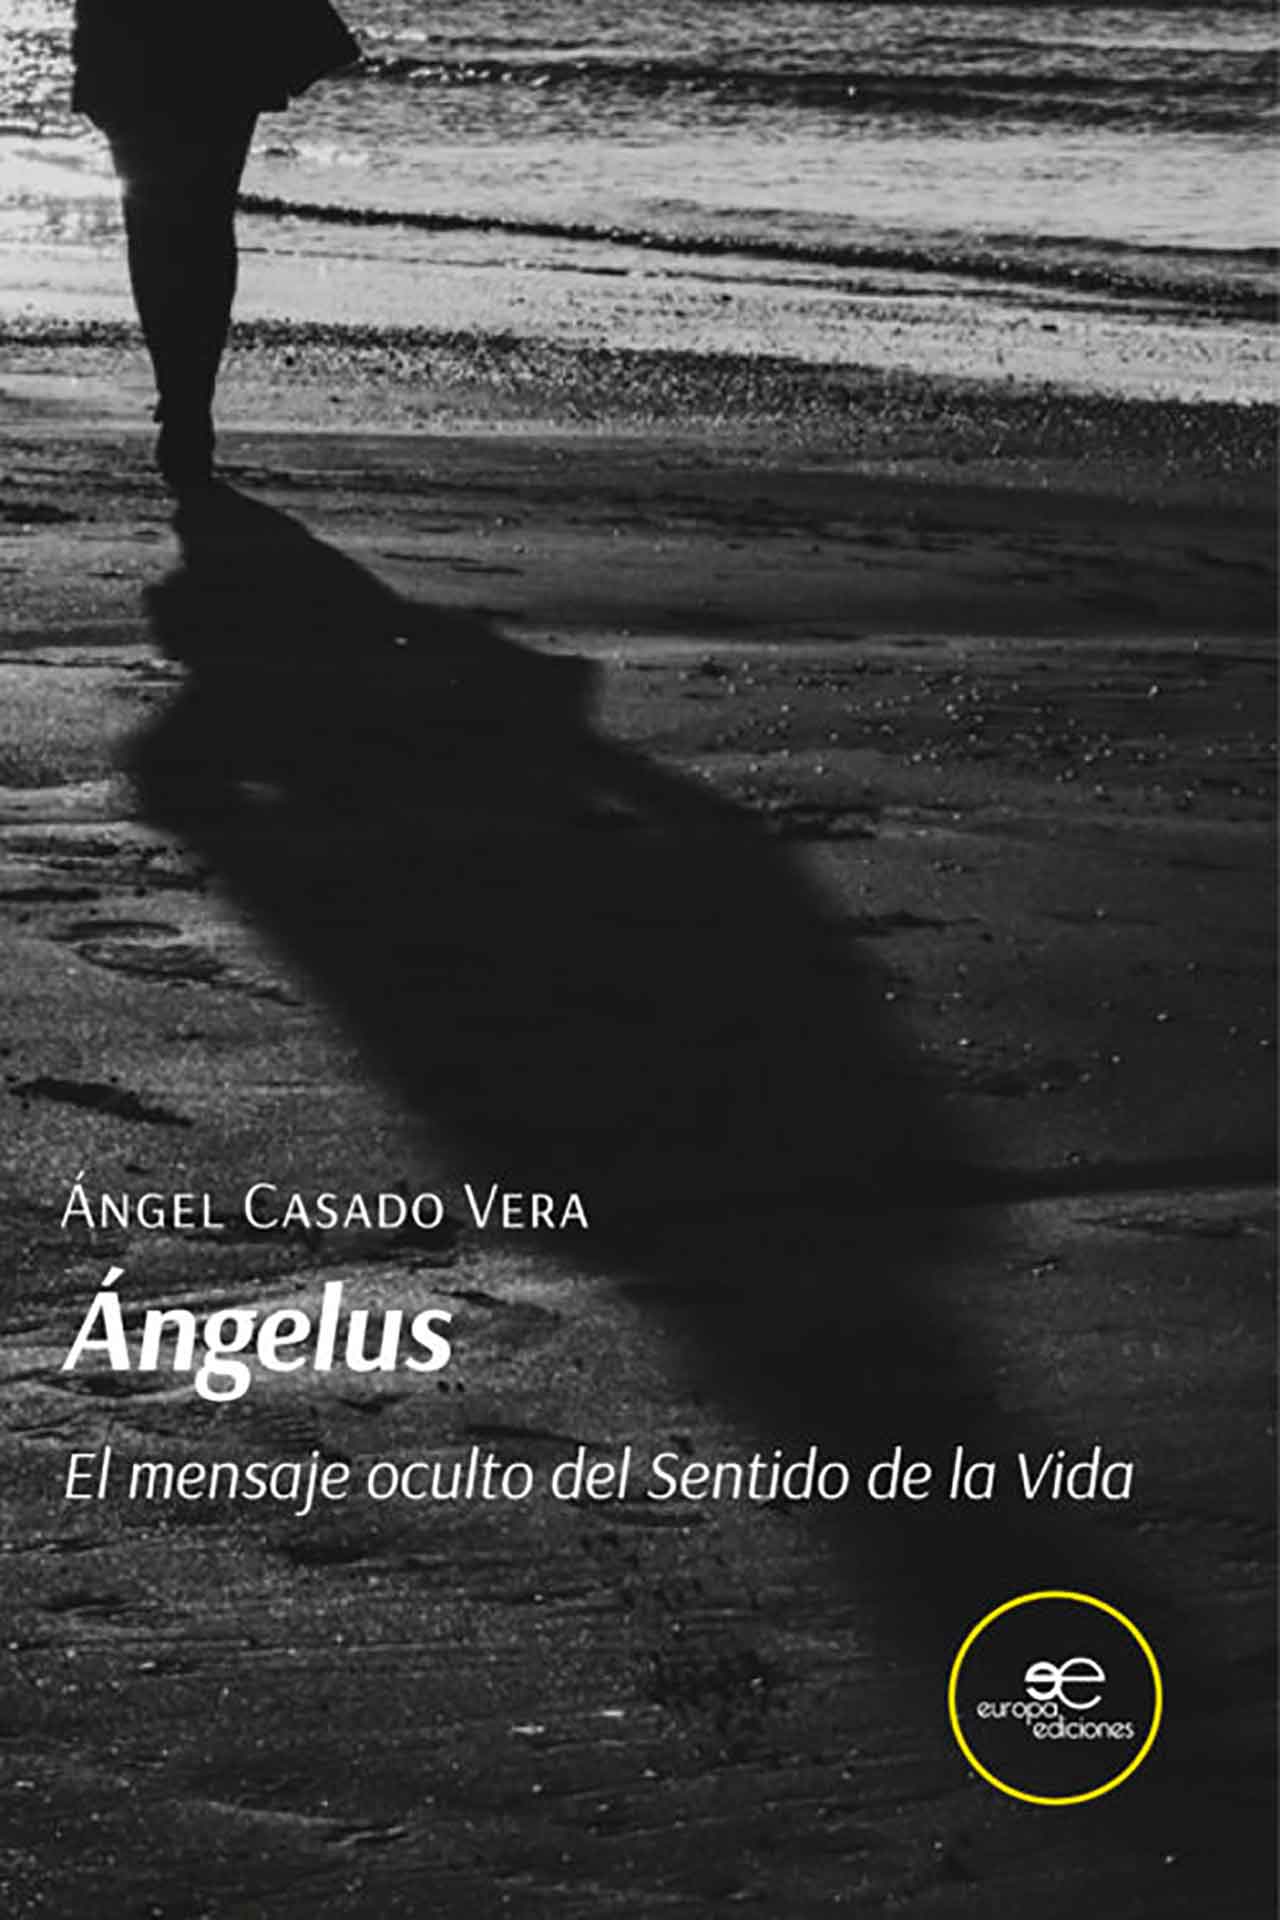 Libro: Ángelus, el mensaje oculto del Sentido de la Vida del accitano Ángel Casado Vera